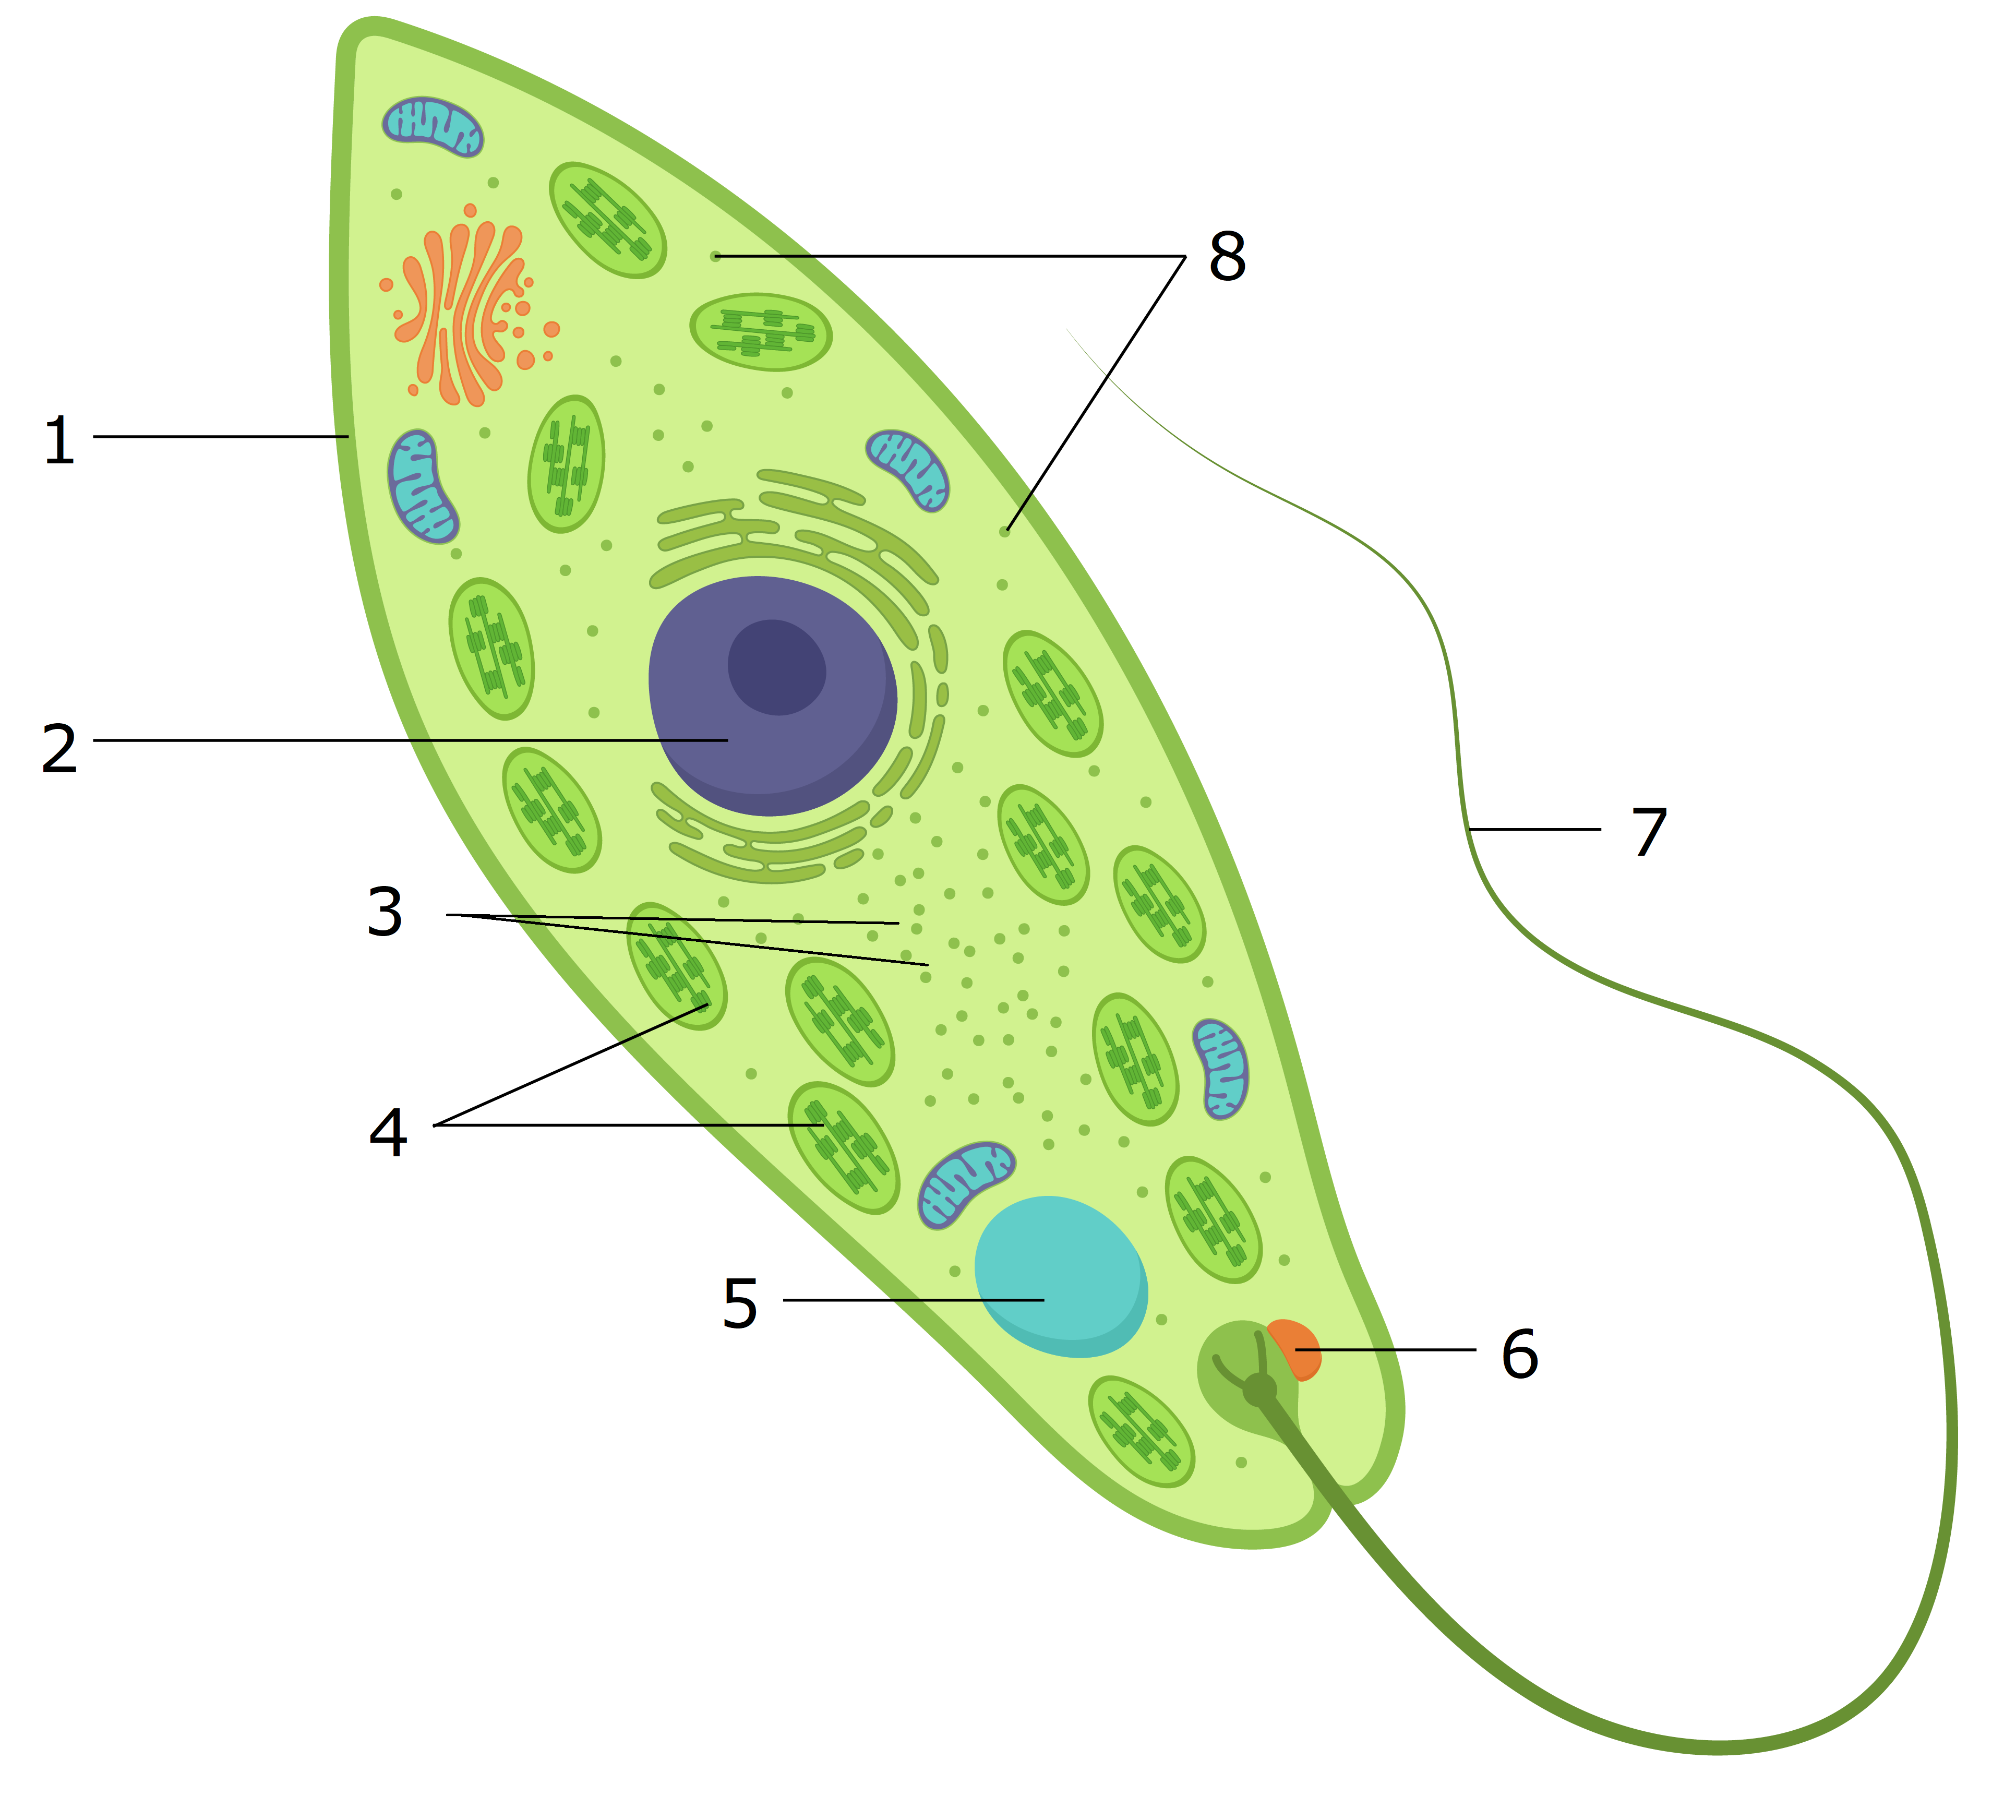 Какие хлоропласты у эвглены зеленой